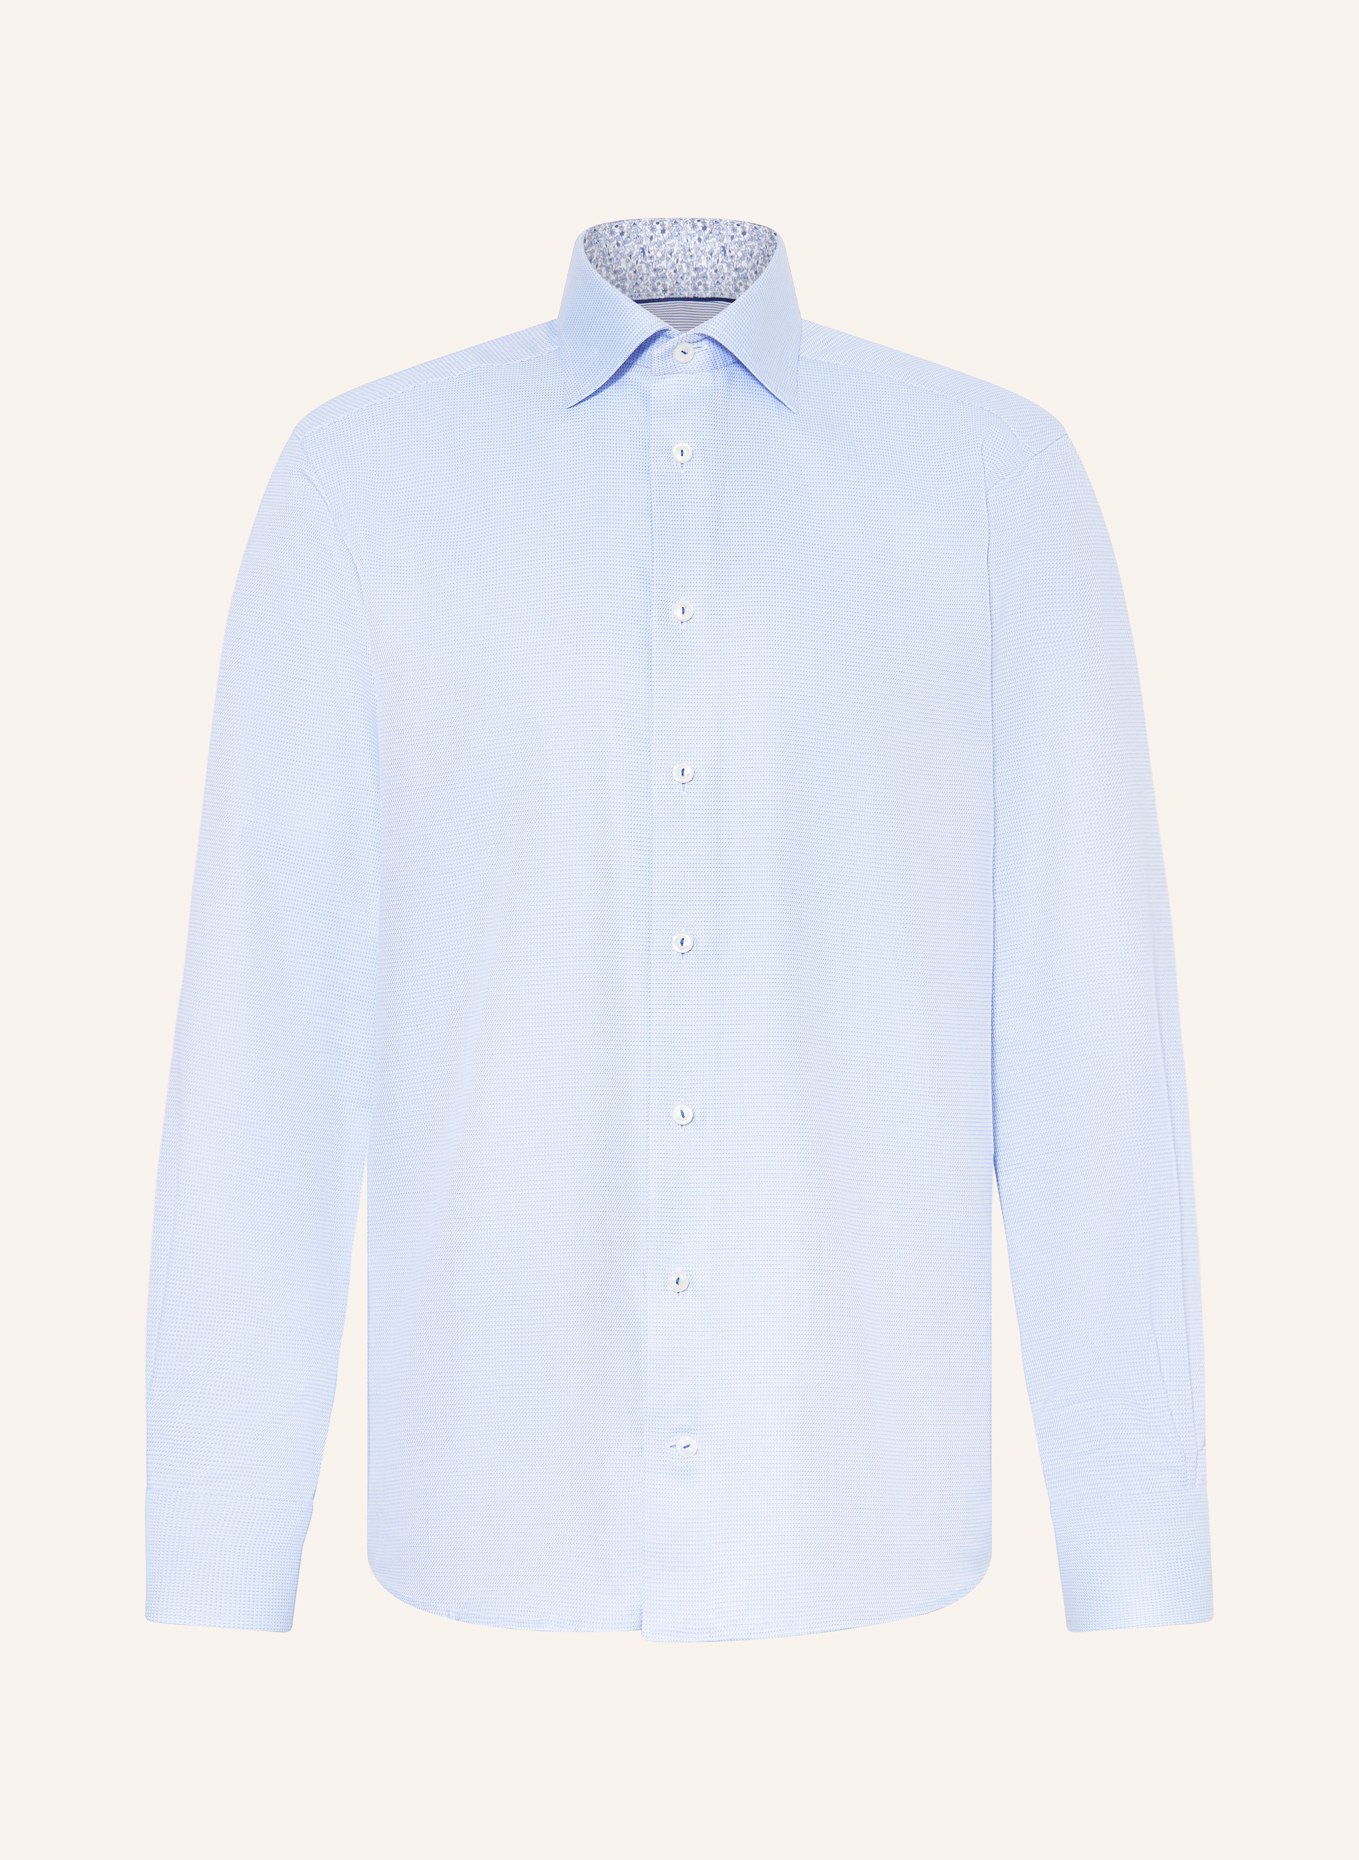 ETON Shirt contemporary fit, Color: LIGHT BLUE (Image 1)